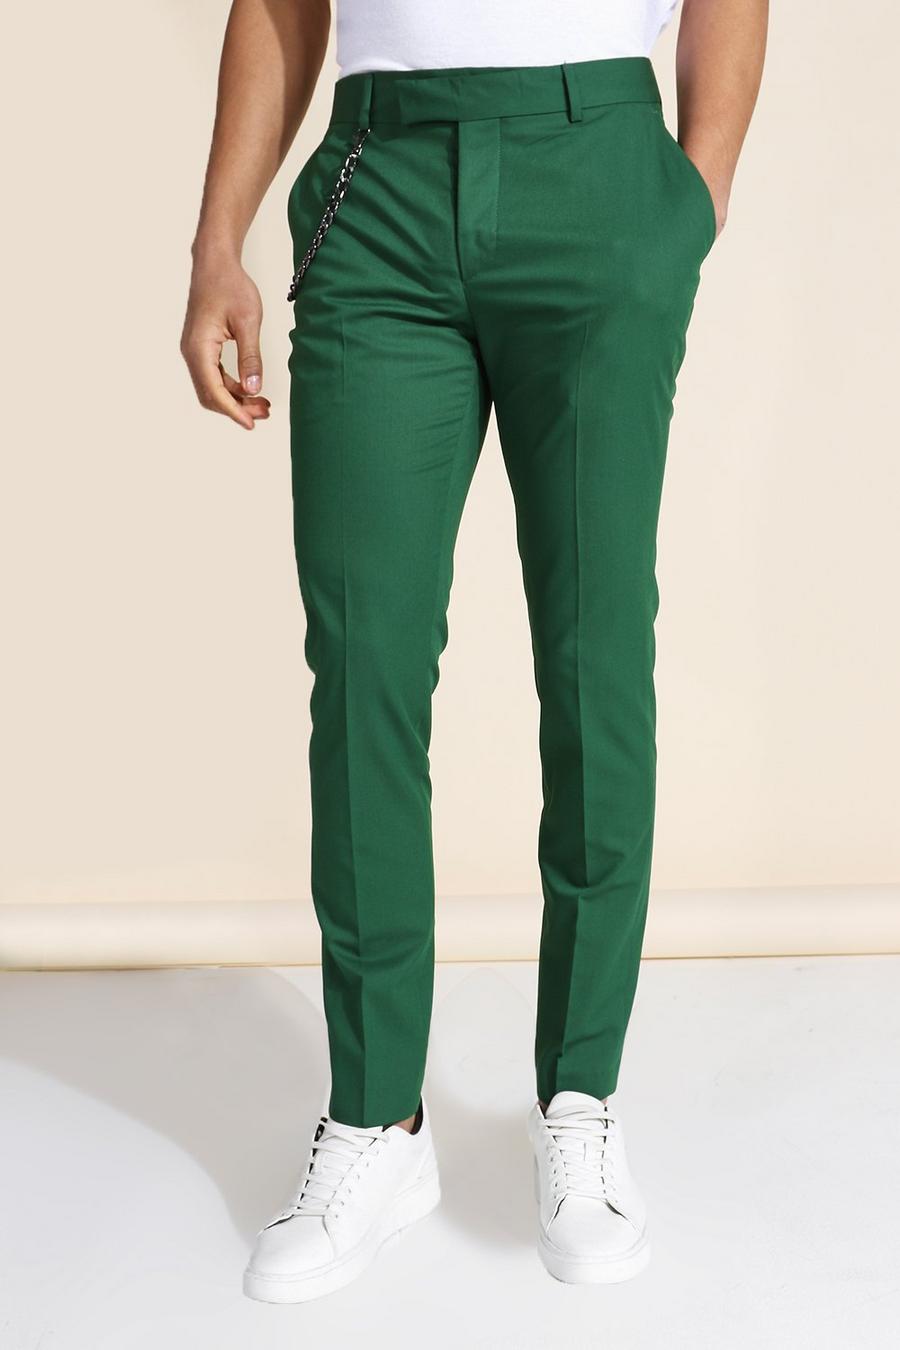 ירוק כהה מכנסי חליפה סקיני עם שרשרת